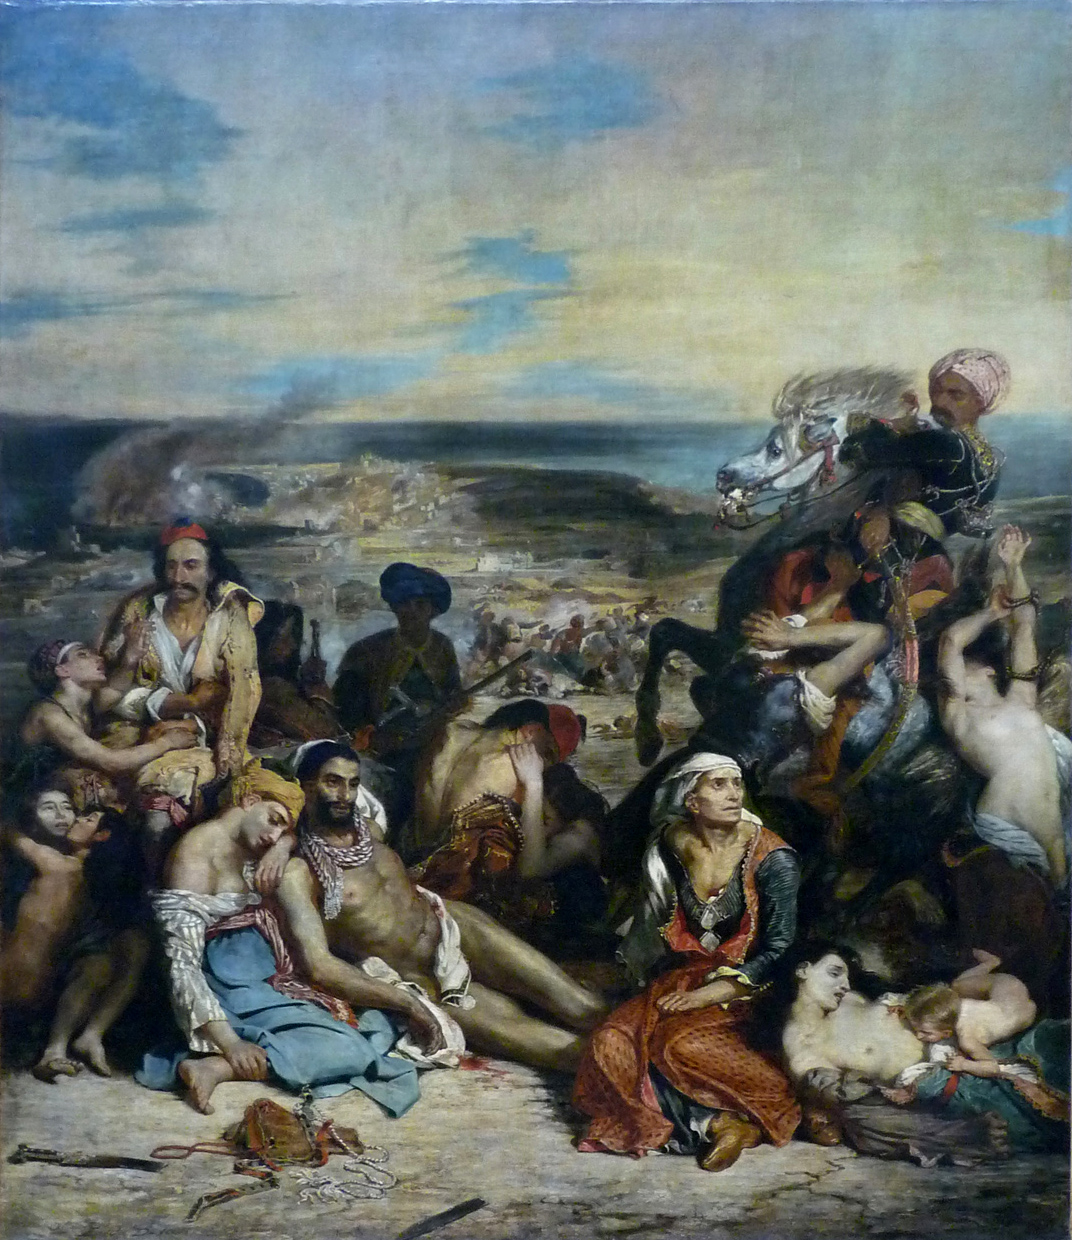 Eugène Delacroix, Massacre at Chios, 1824, oil on canvas, 419 × 354 cm (Musée du Louvre, Paris, photo: Steven Zucker, CC BY-NC-SA 2.0)